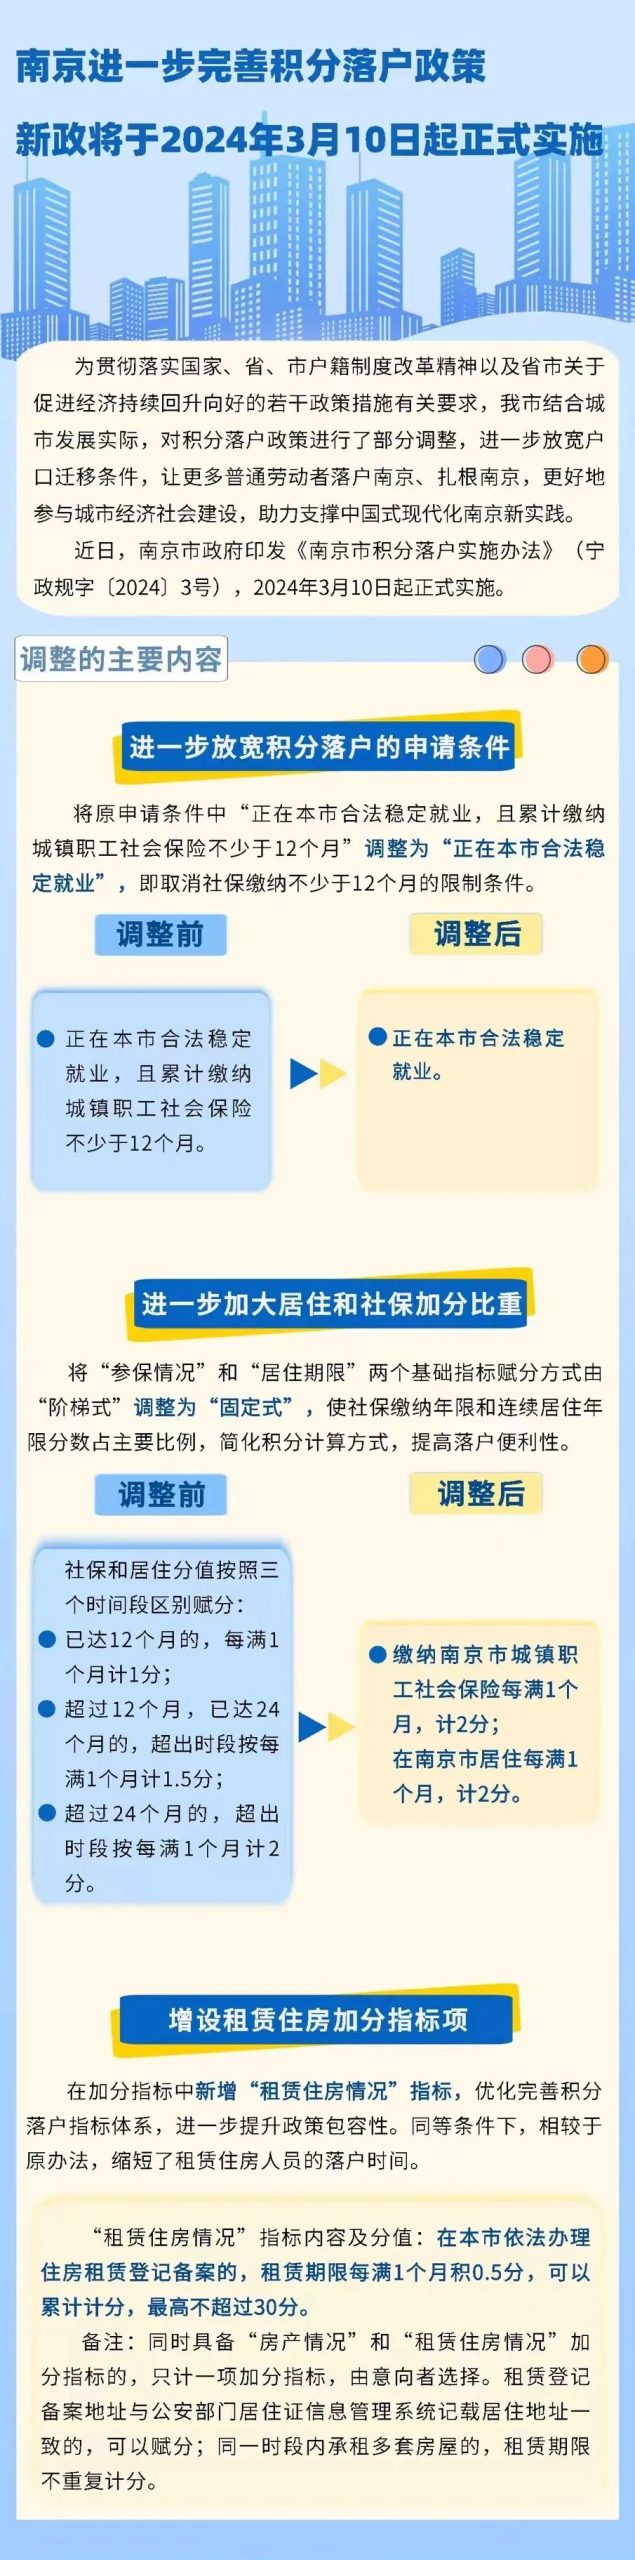 南京积分落户门槛再放宽：取消社保缴纳不少于12个月的限制条件-公闻财经